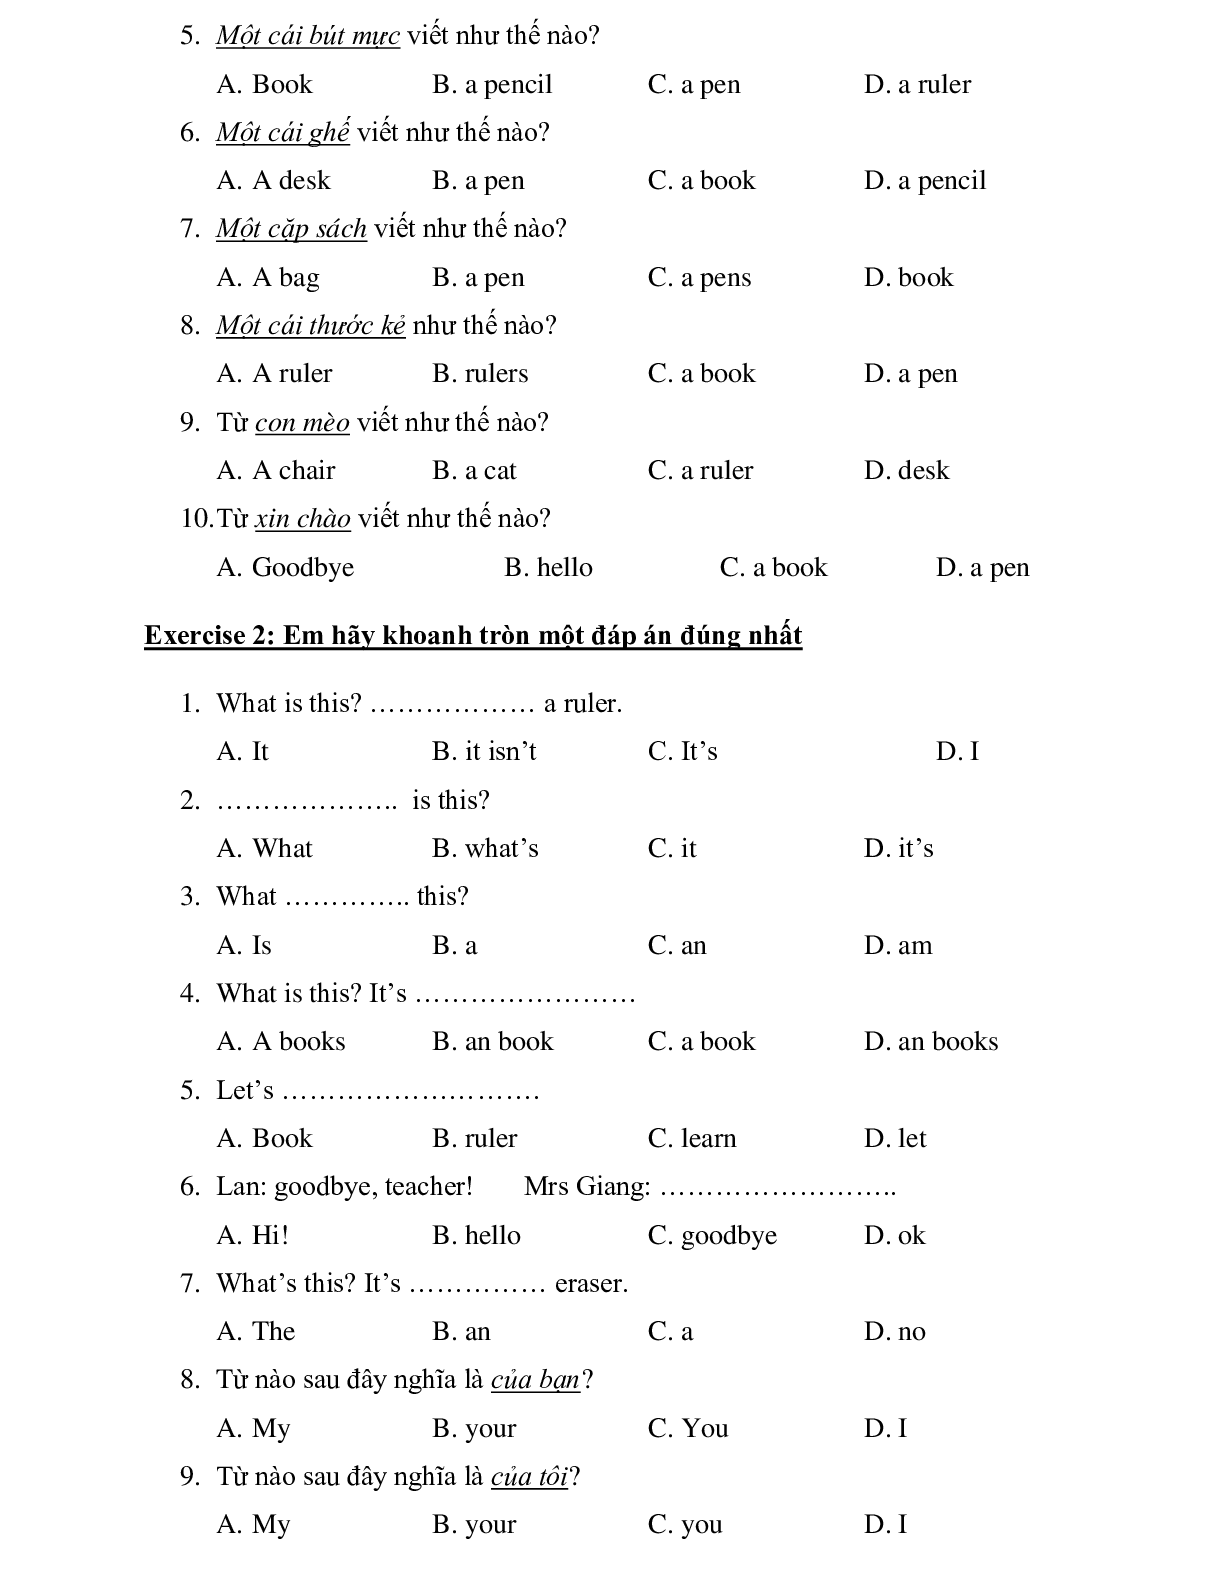 Bộ đề ôn tập cuối kì môn Tiếng Anh lớp 3 năm 2021 (30 đề) (trang 5)